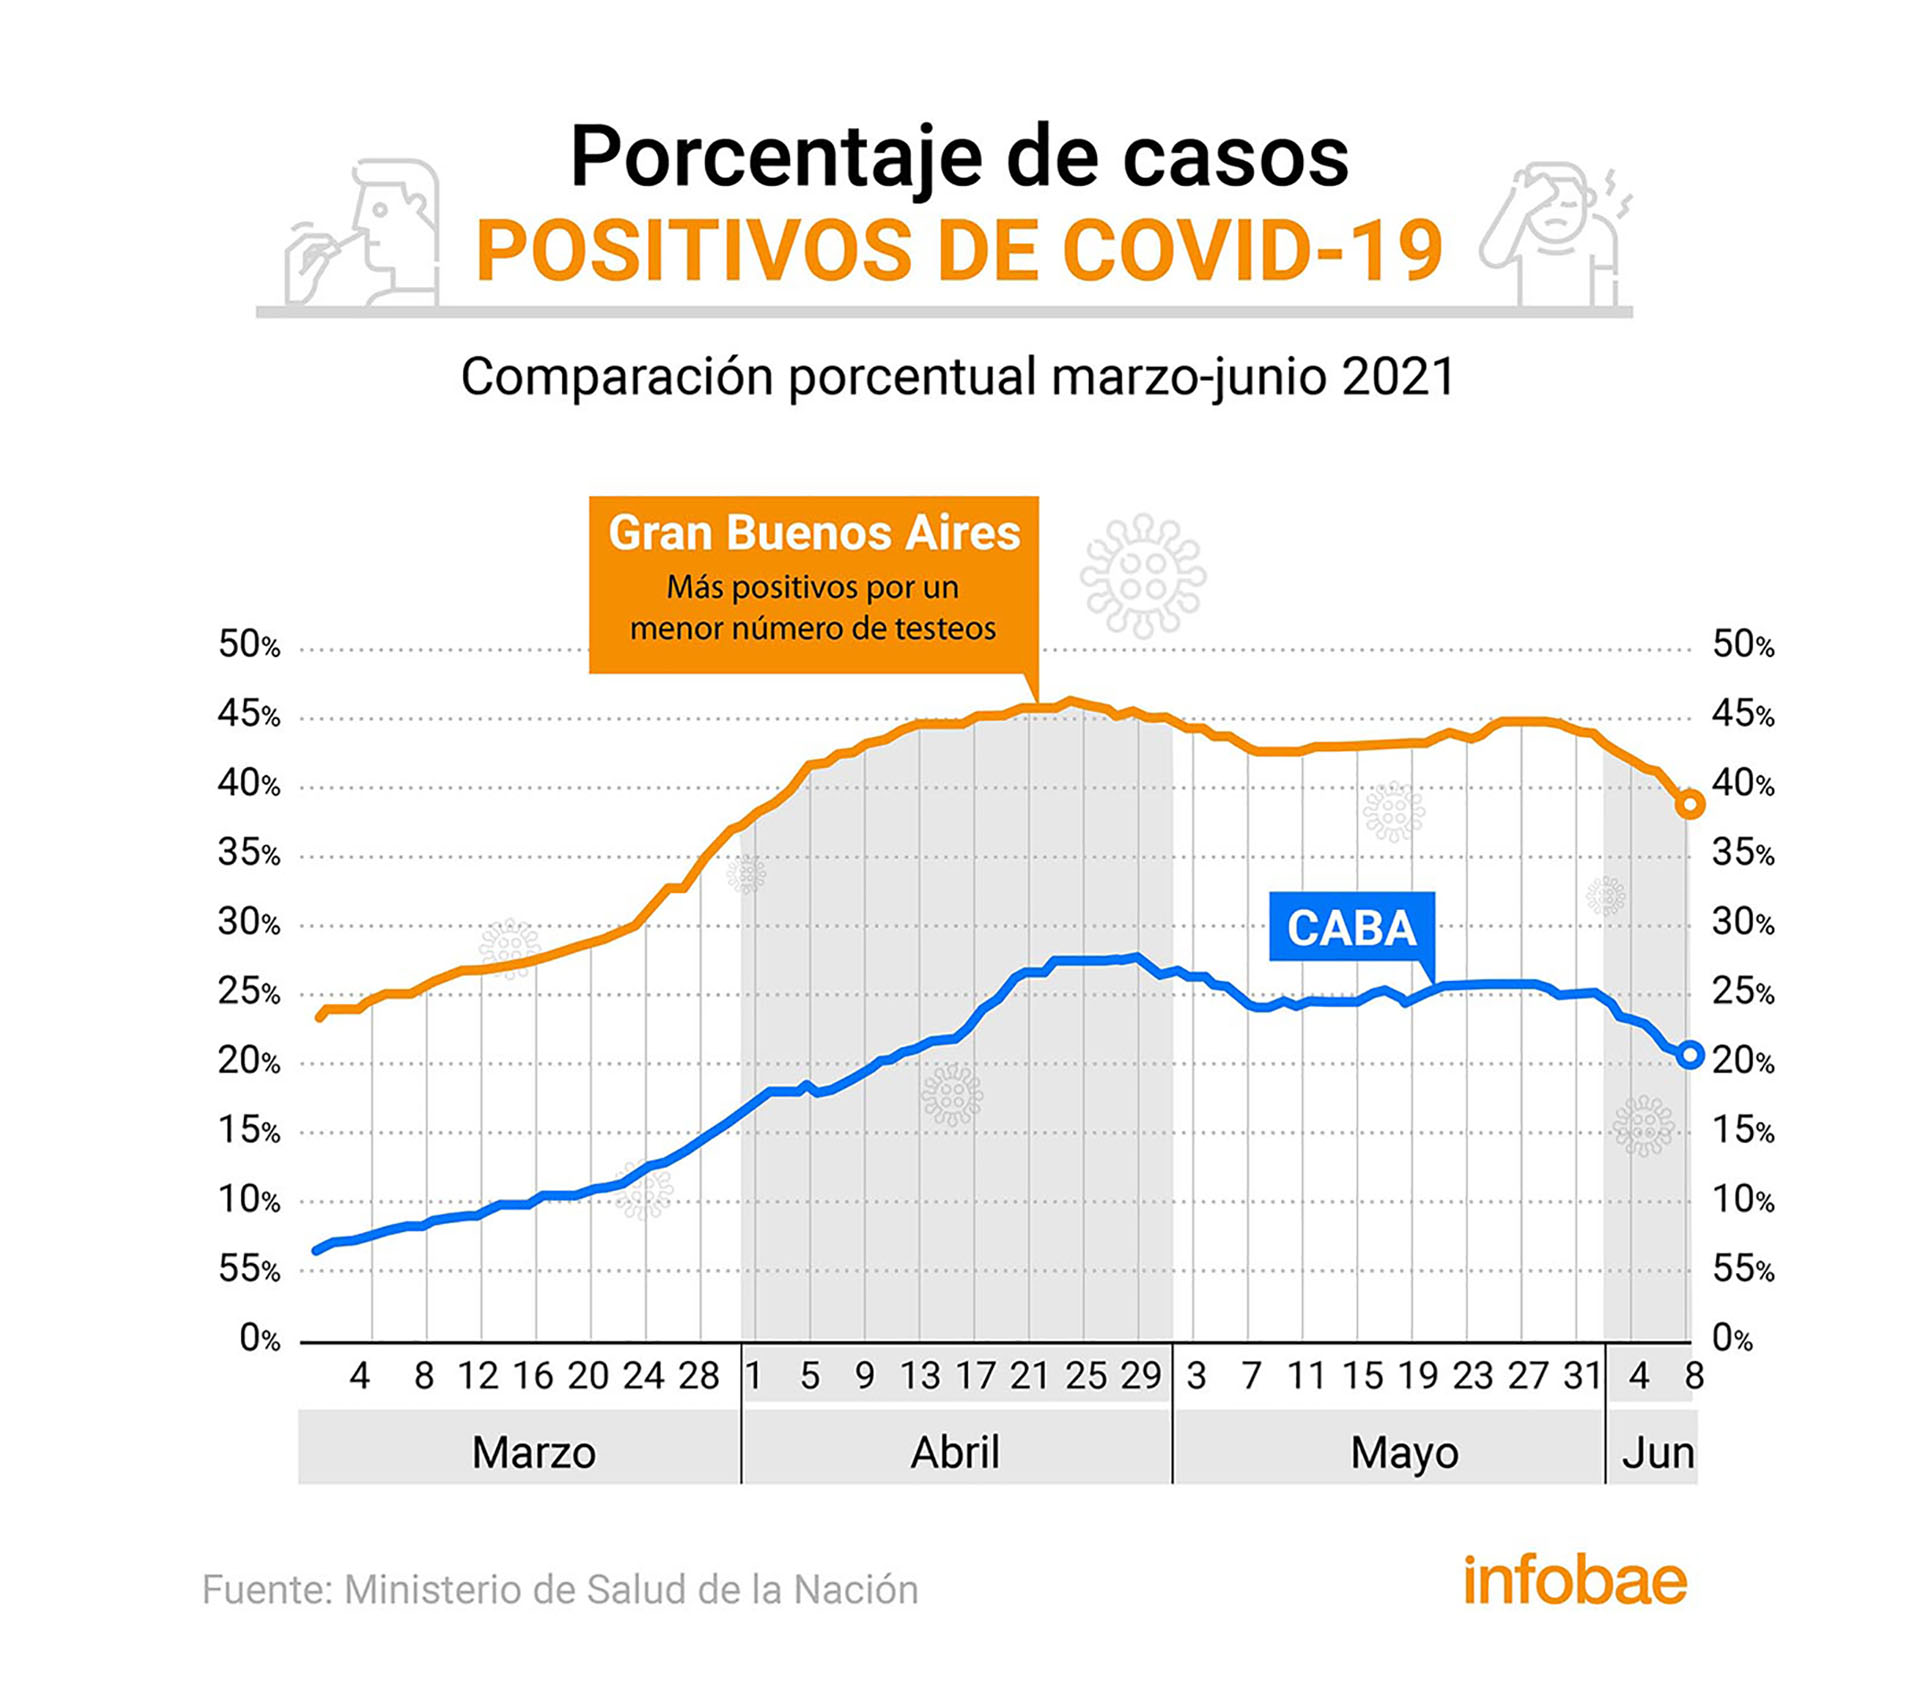 El Gran Buenos Aires duplica en positividad de casos COVID-19 a la Ciudad de Buenos Aires. El dato indica una menos catidad de pruebas.